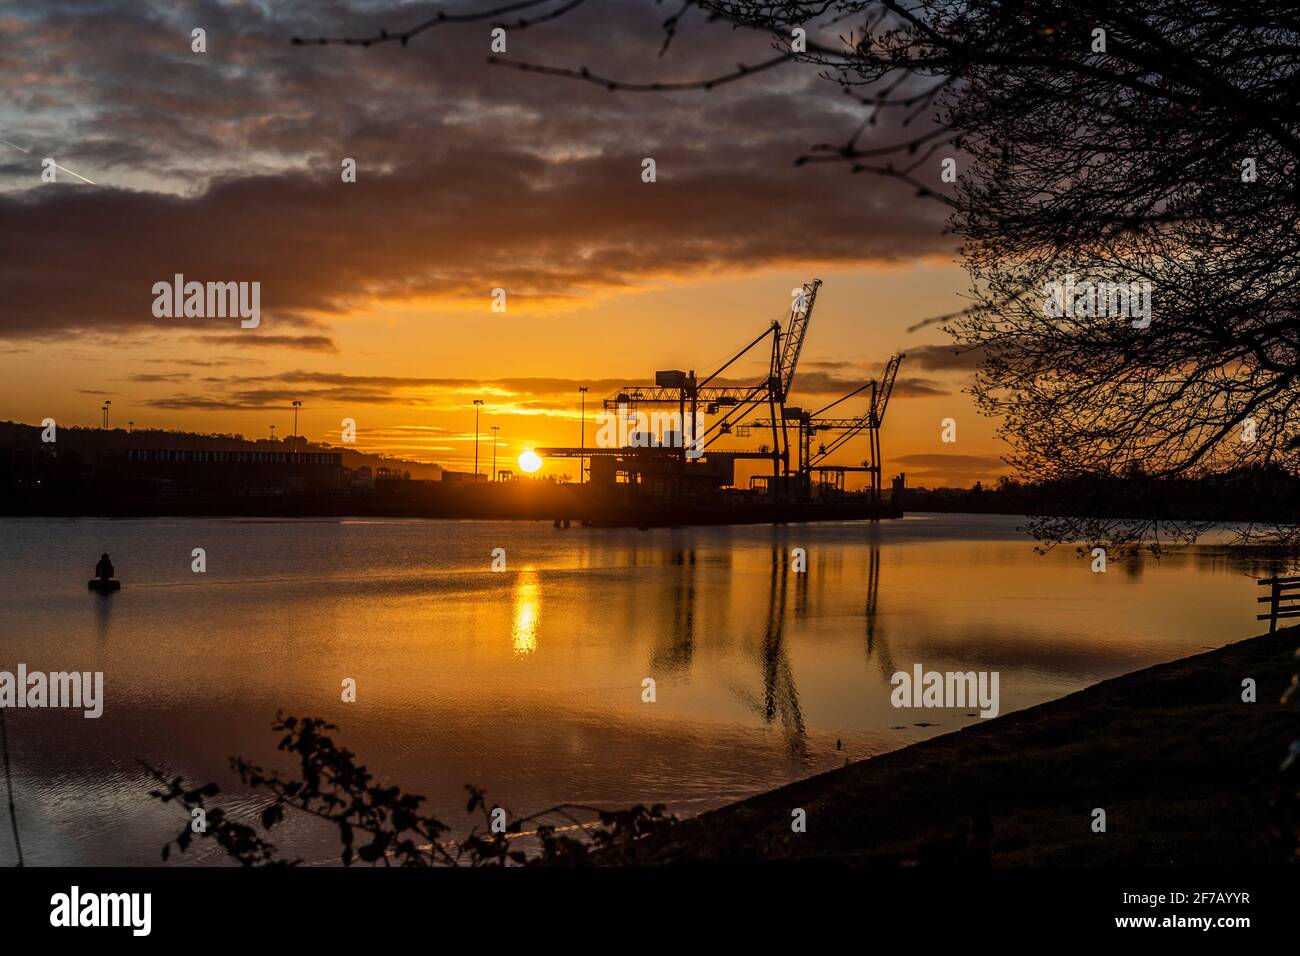 Cork, Irlande. 6 avril 2021. Le soleil se lève au-dessus des quais de Tivoli dans le port de Cork comme prélude à une journée de soleil avec des sommets de 5 à 7C. Crédit : AG News/Alay Live News Banque D'Images